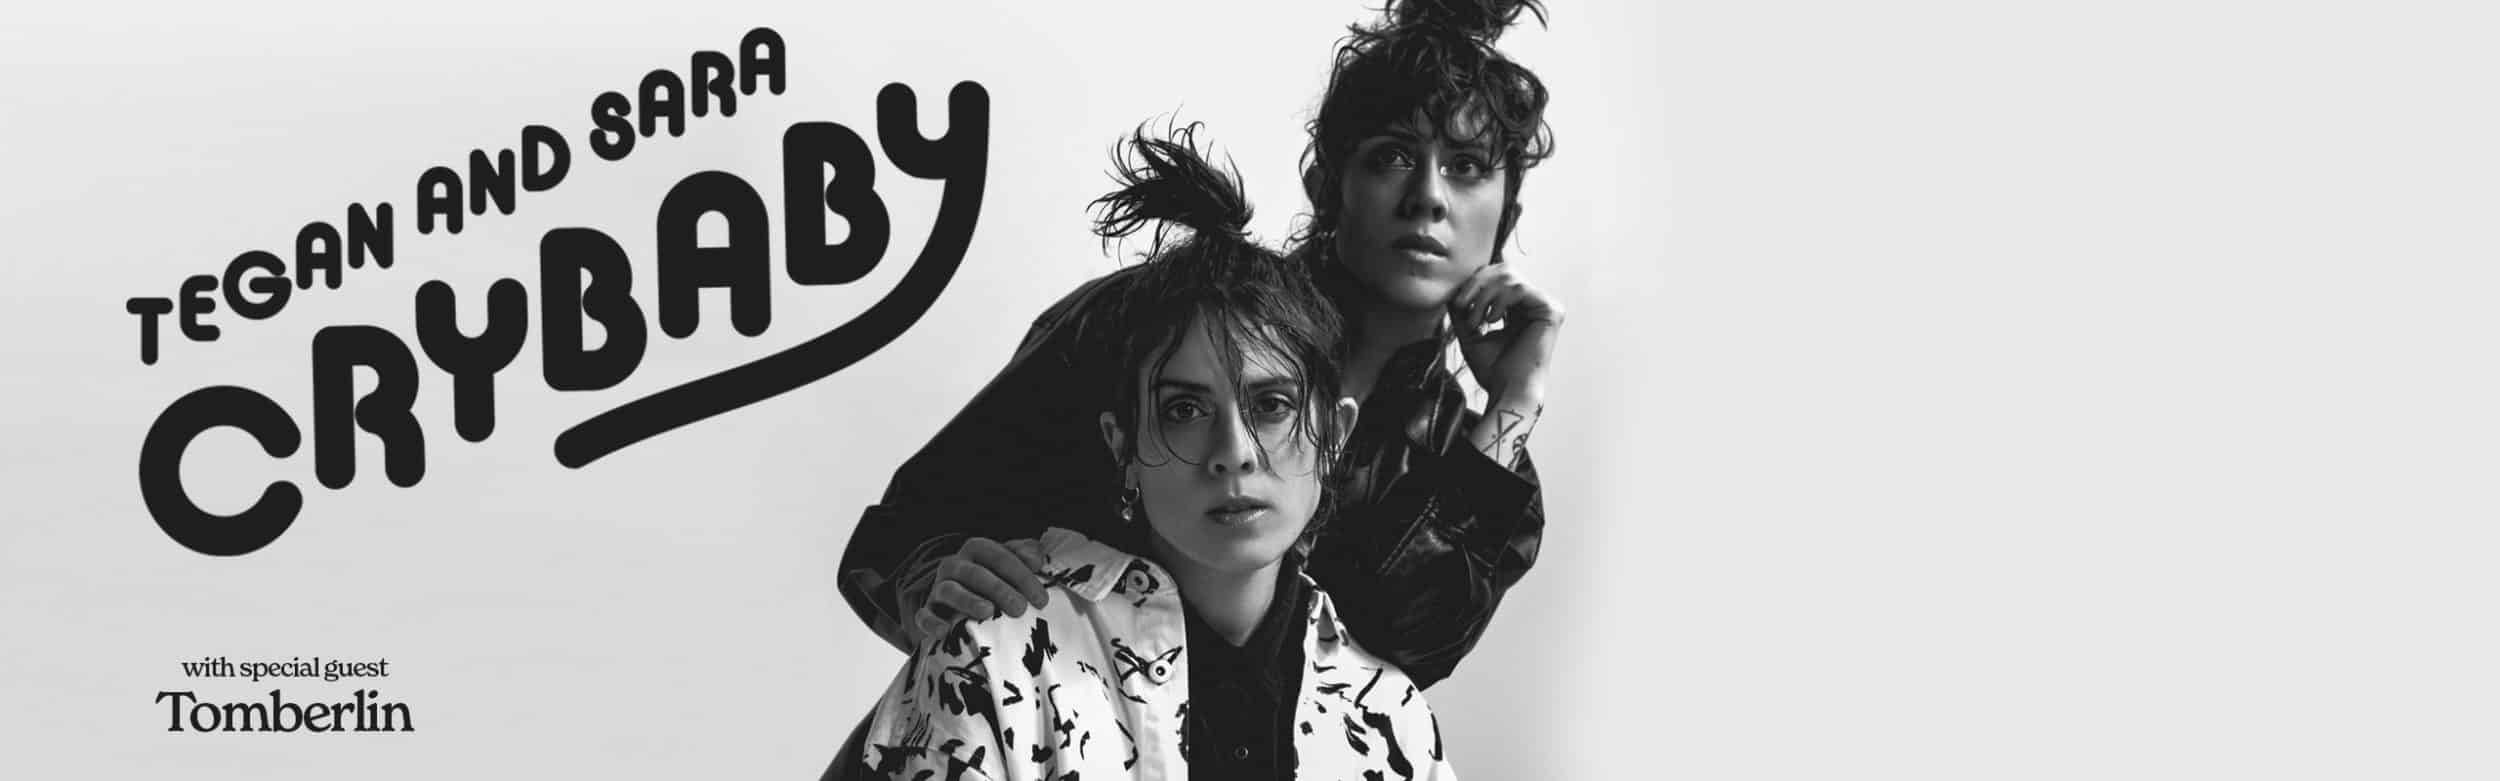 Tegan and Sara: Crybaby Tour